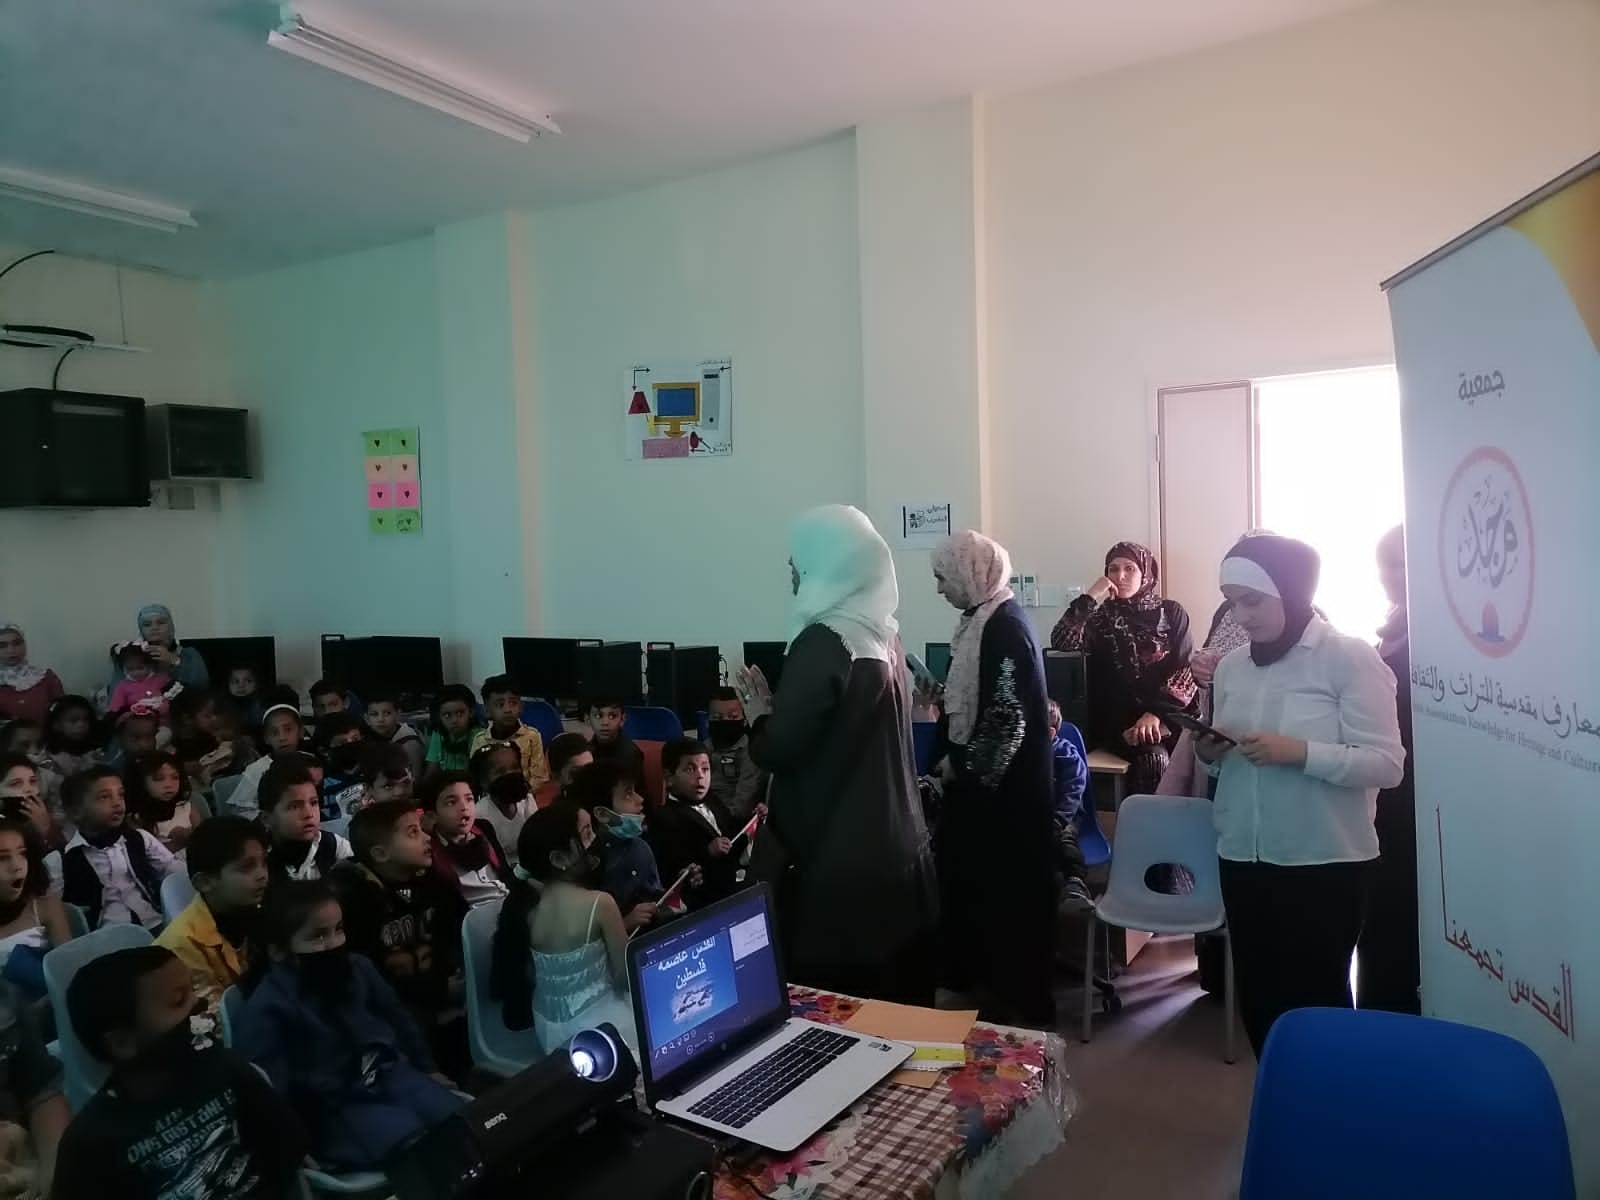 جمعية معارف مقدسية تنظم نشاطاً مدرسياً في الأغوار بالأردن